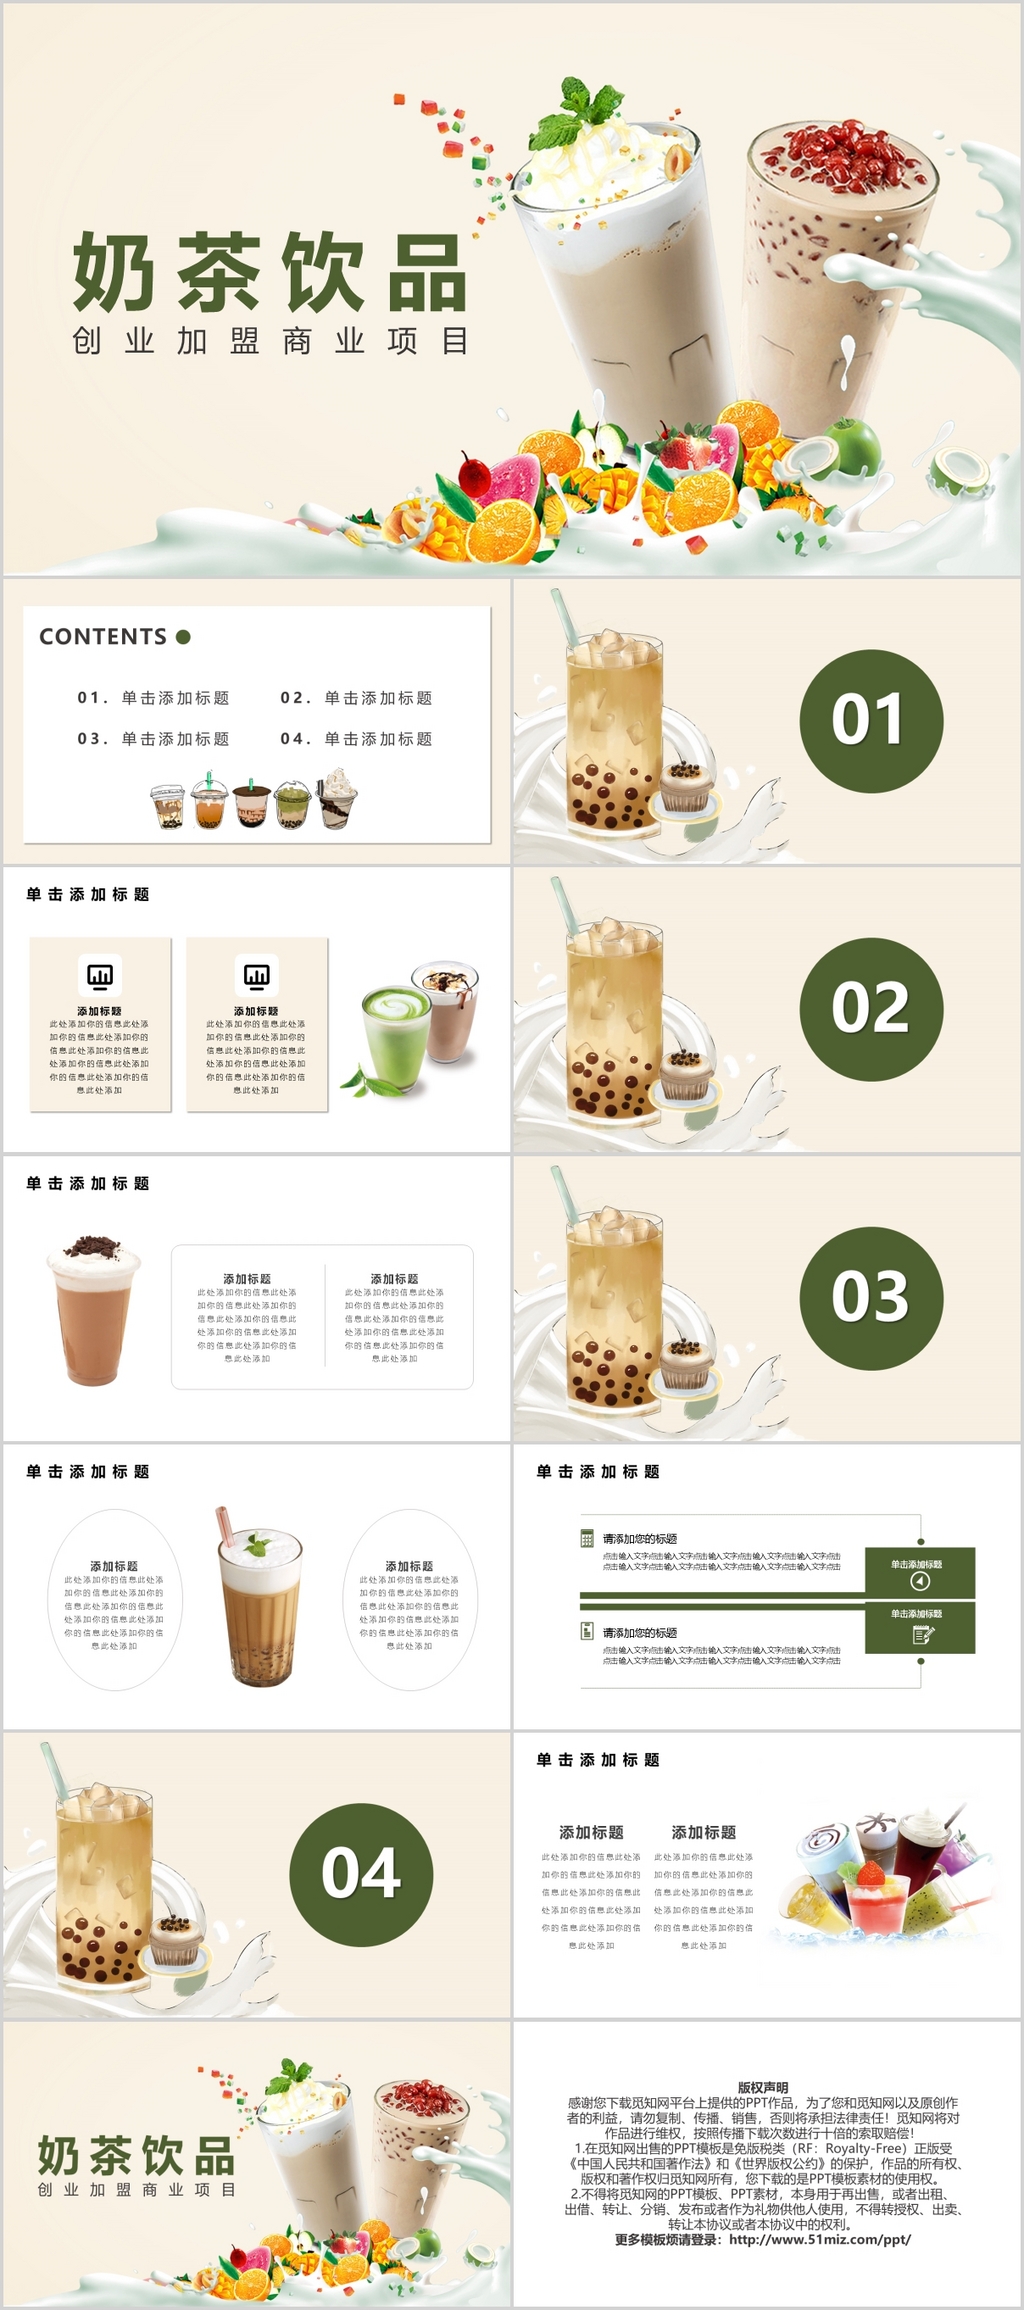 奶茶饮品创业加盟商业项目PPT模板宣传PPT动态PPT果汁